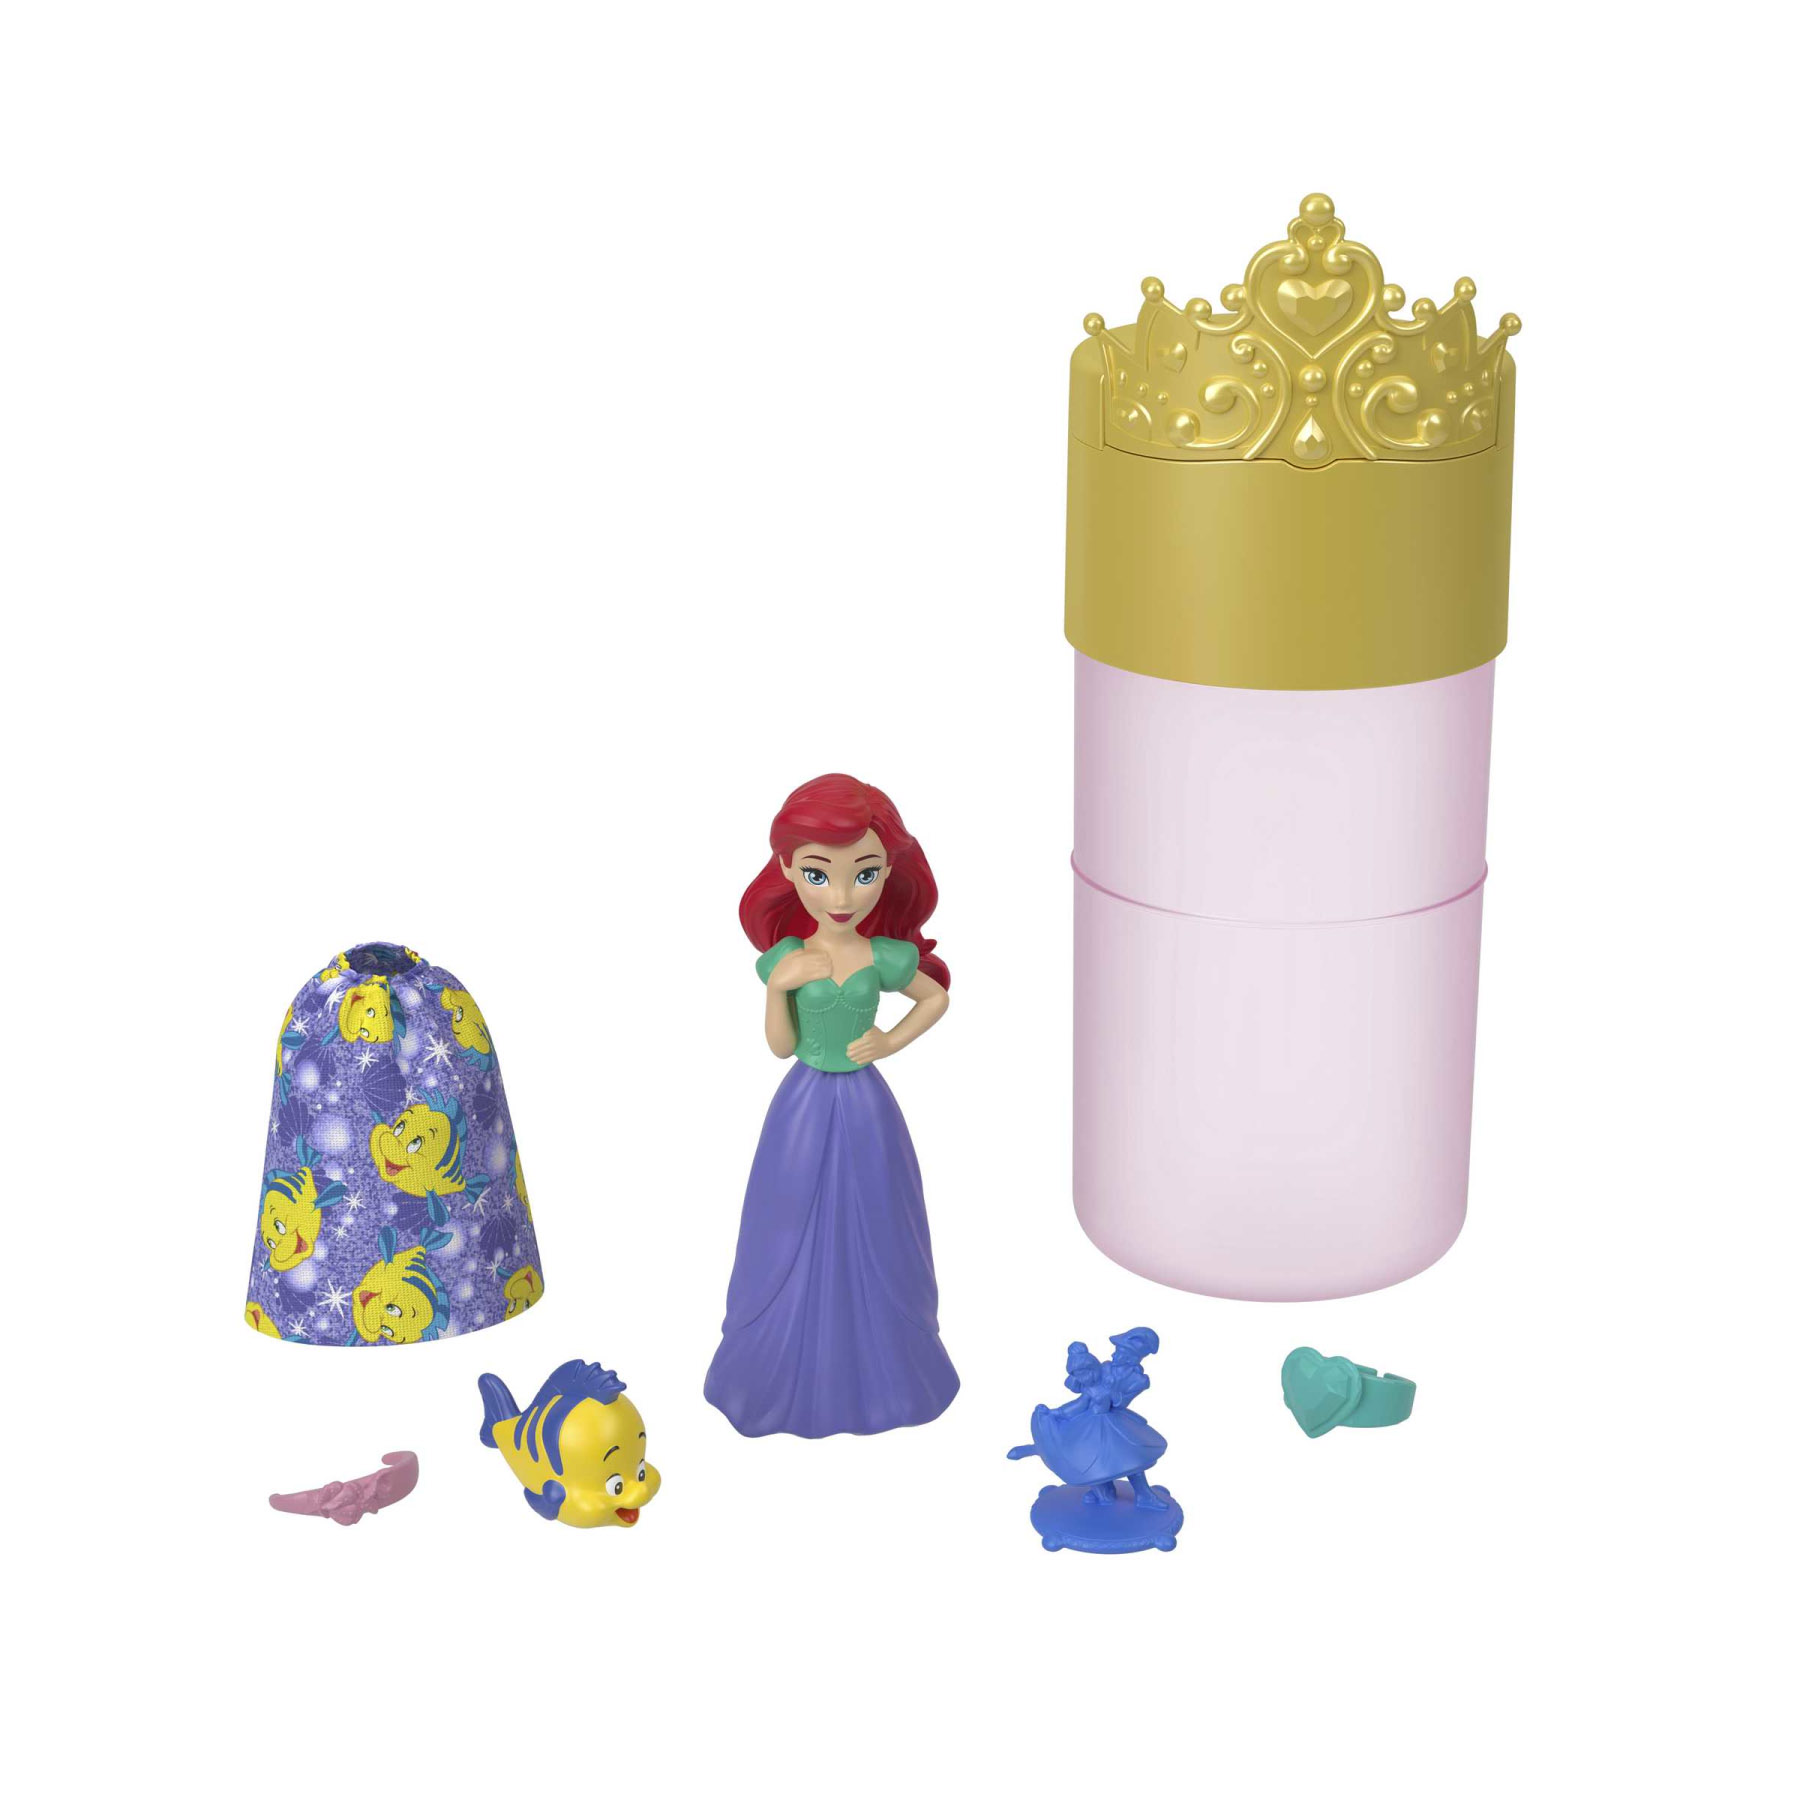 Disney Princess Royal Color Reveal, Bambola con 6 sorprese e un personaggio, ispirata ai film Disney - Disney